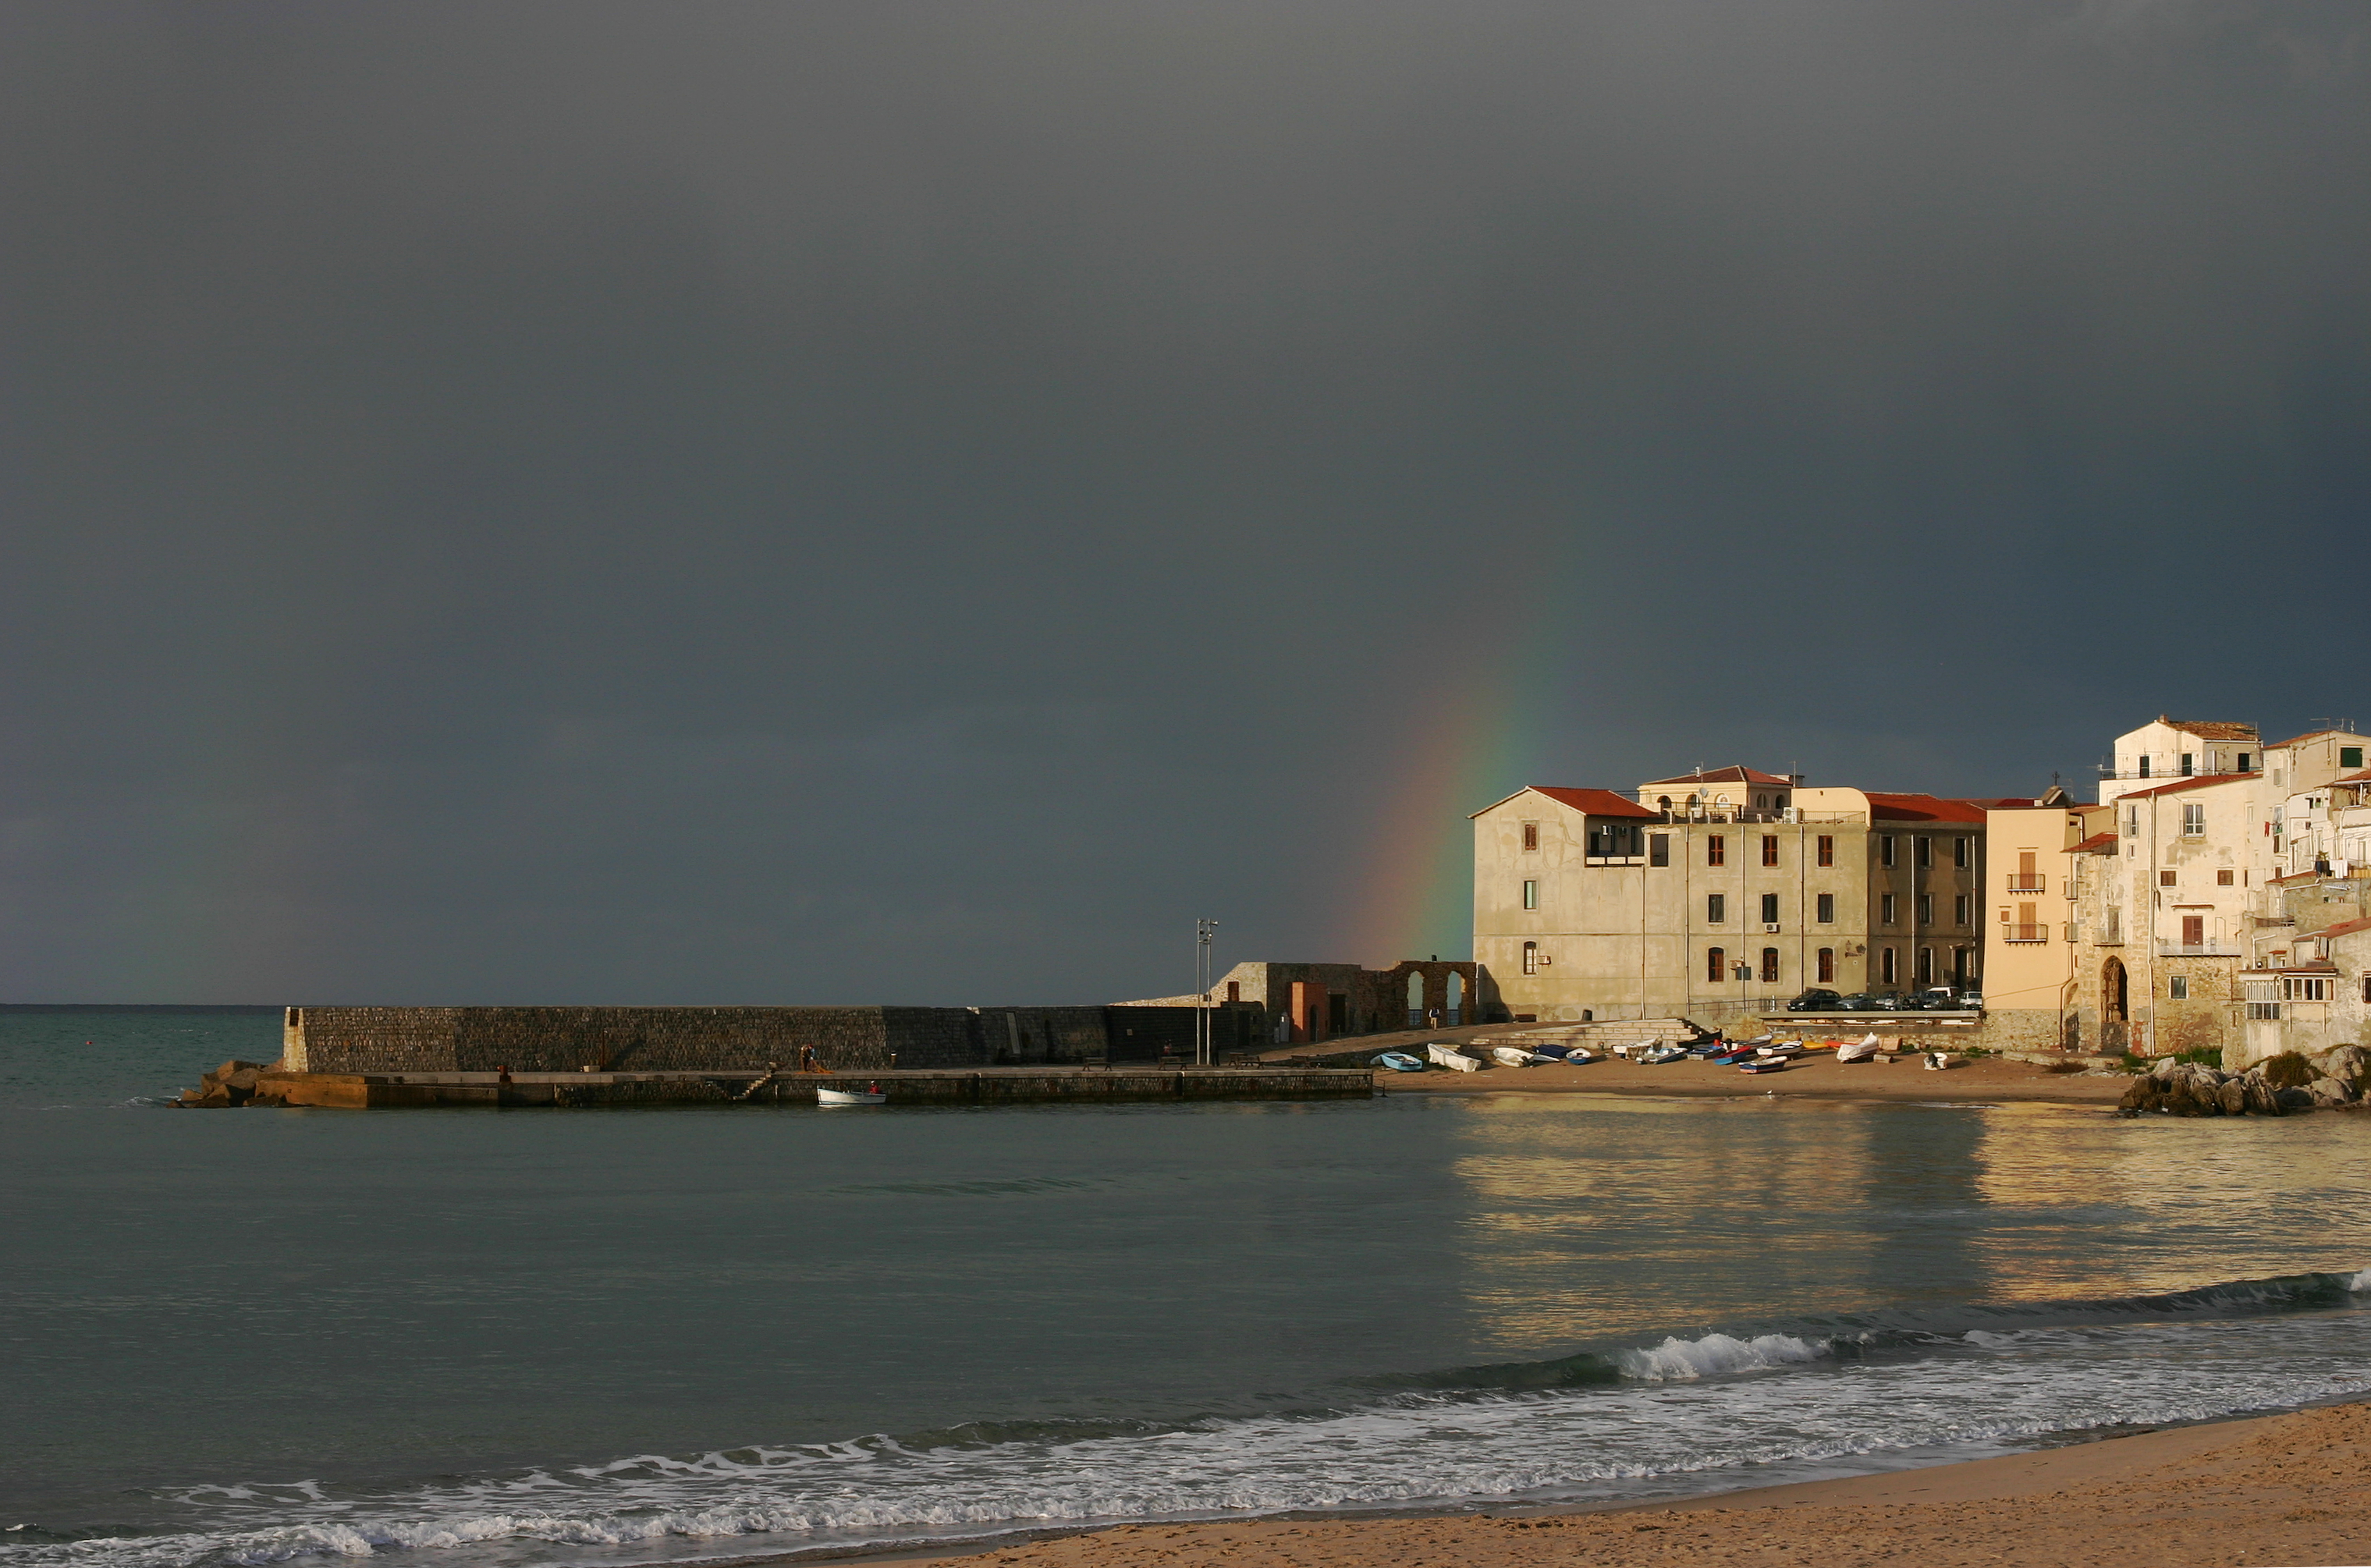 Beach and rainbow - Cefalù - Italy 2015